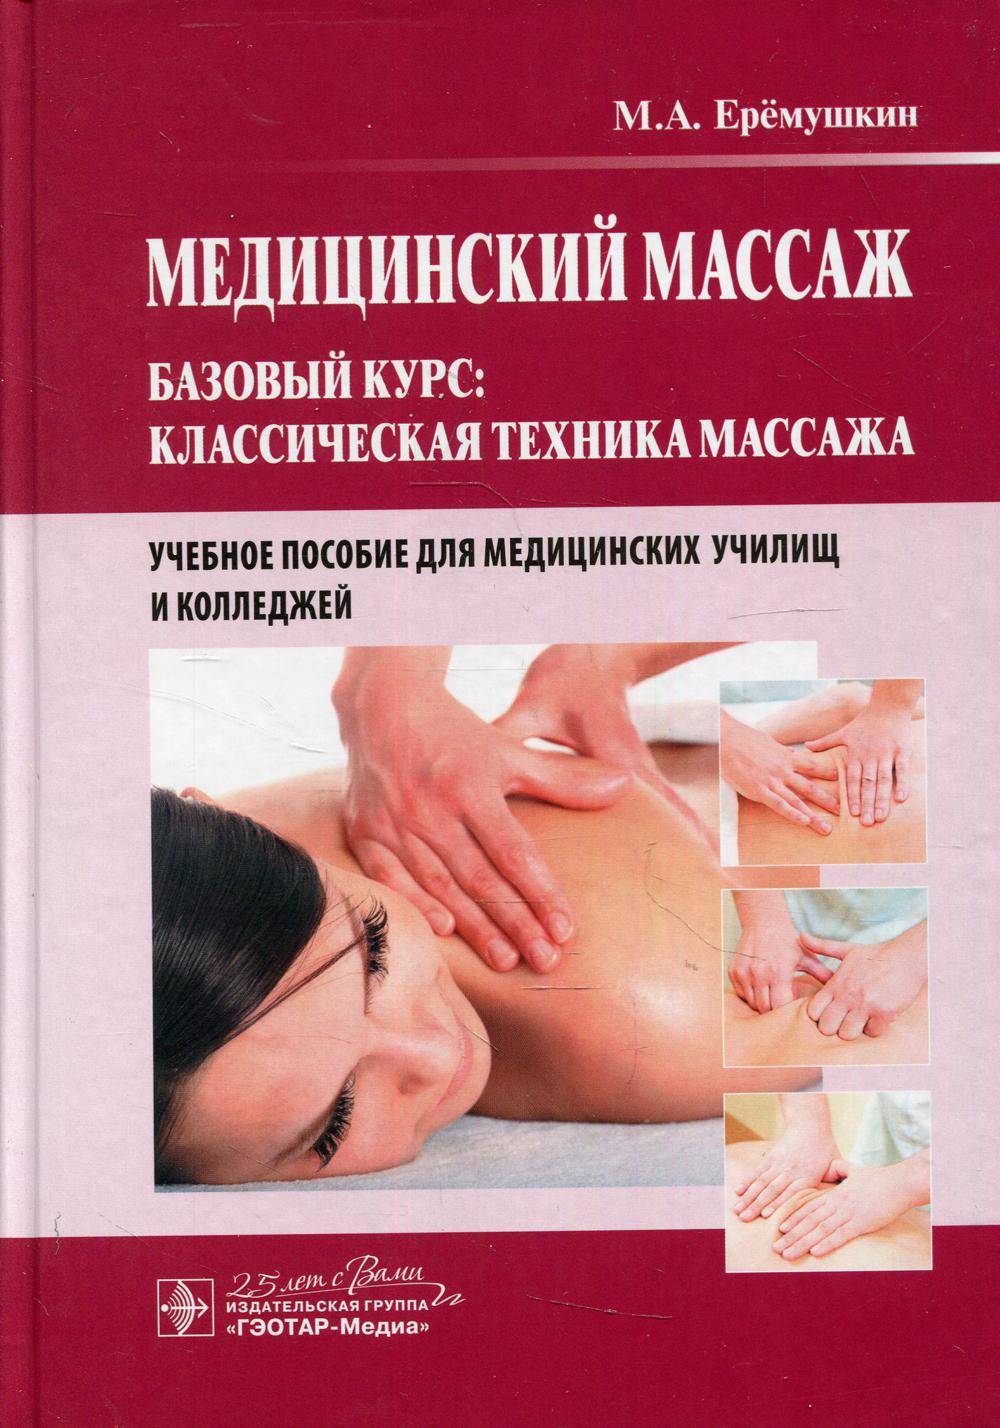 Медицинский массаж. Базовый курс: классическая техника массажа: Учебное пособие